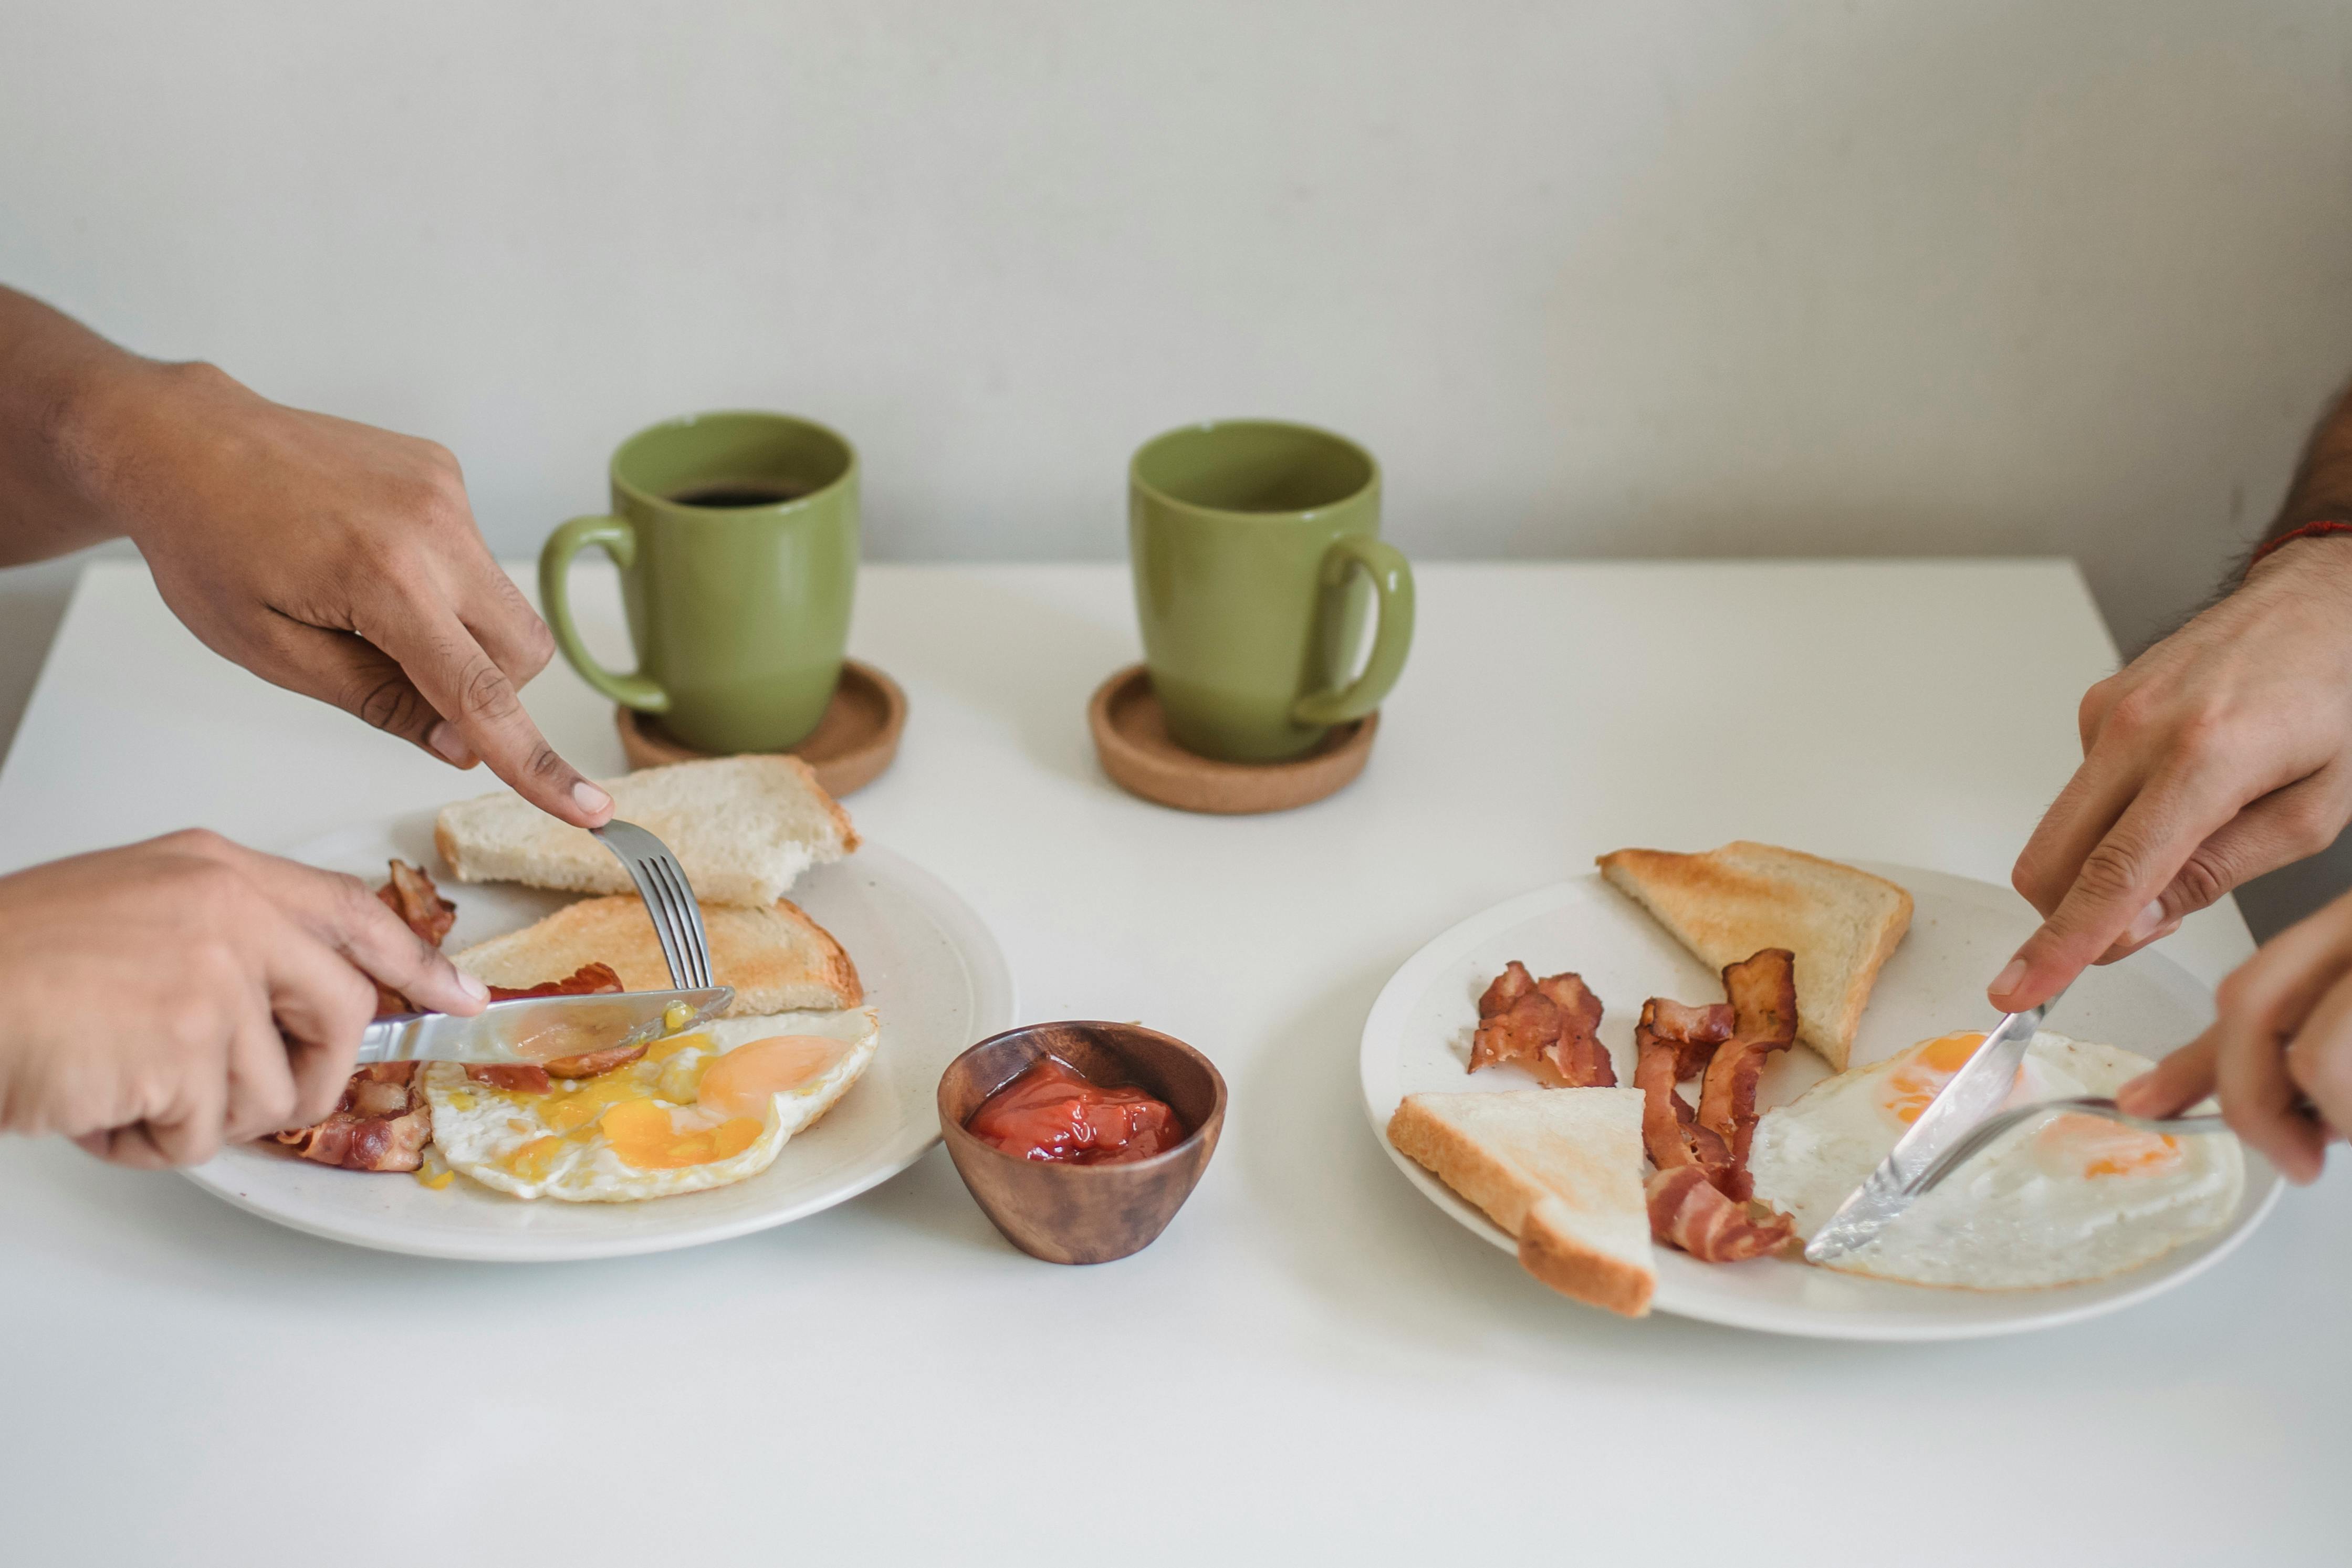 Two people eating breakfast | Source: Pexels